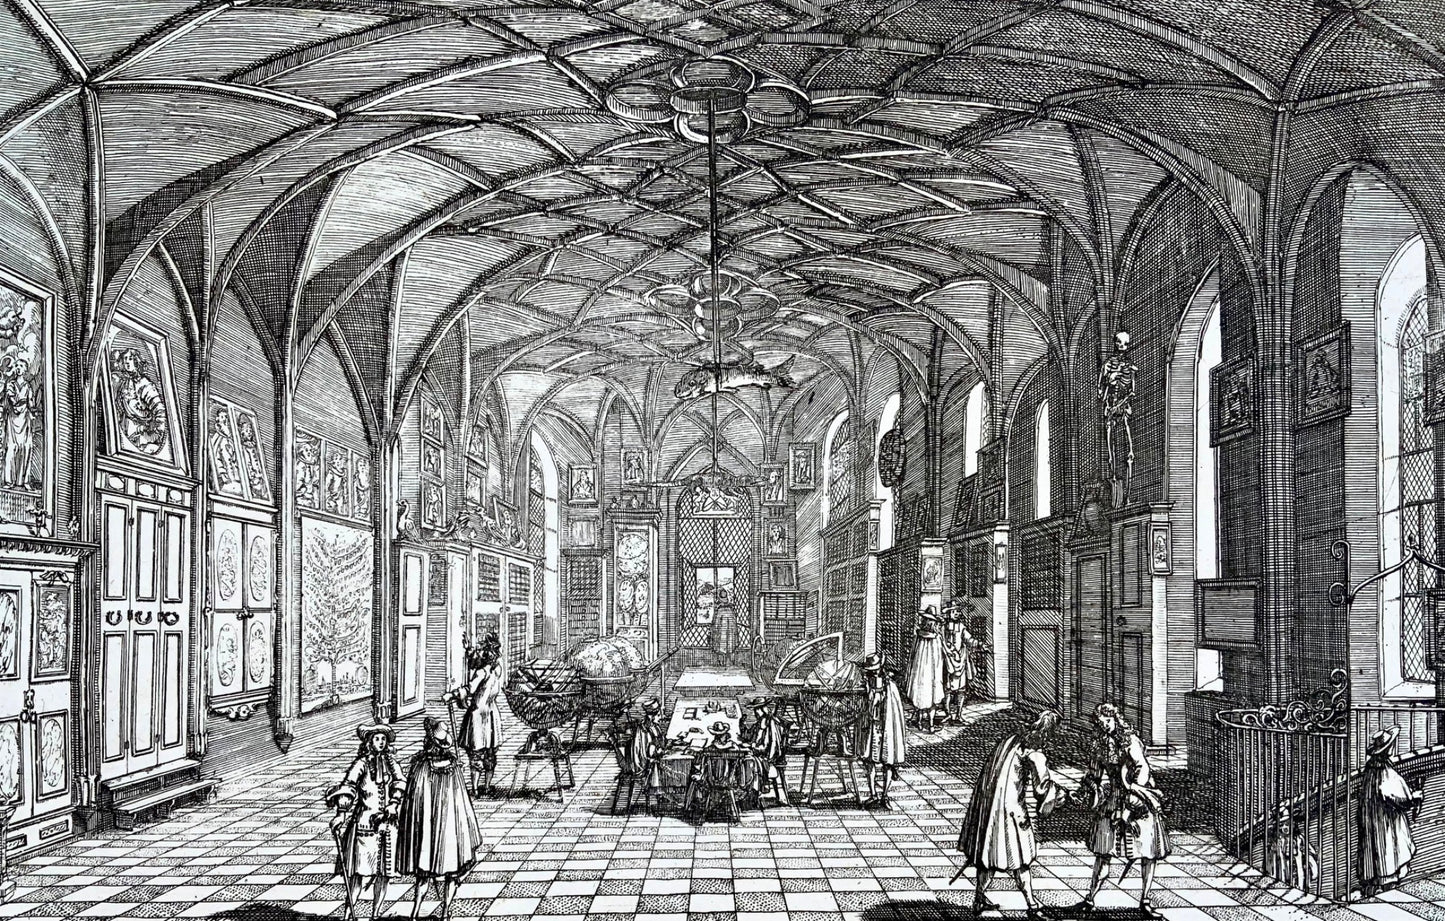 1688 Broadside, Kunst-Kammer, Art Museum, Zurich, Switzerland